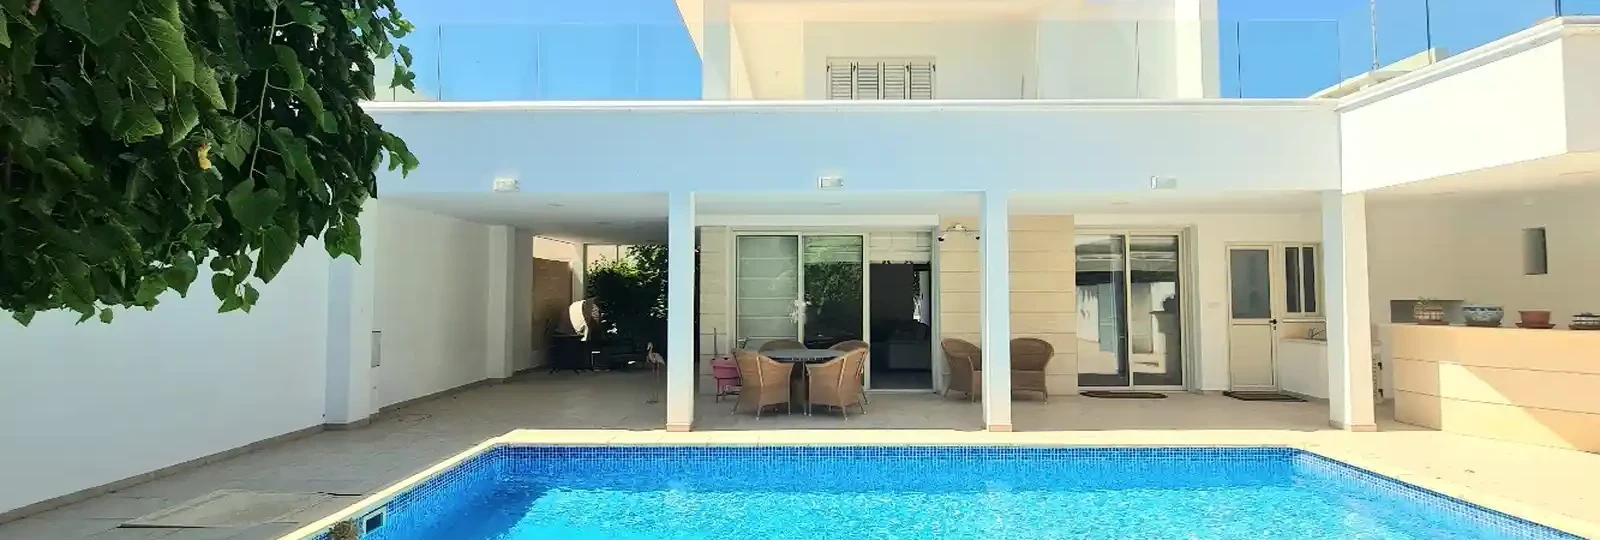 3-bedroom villa to rent €3.600, image 1